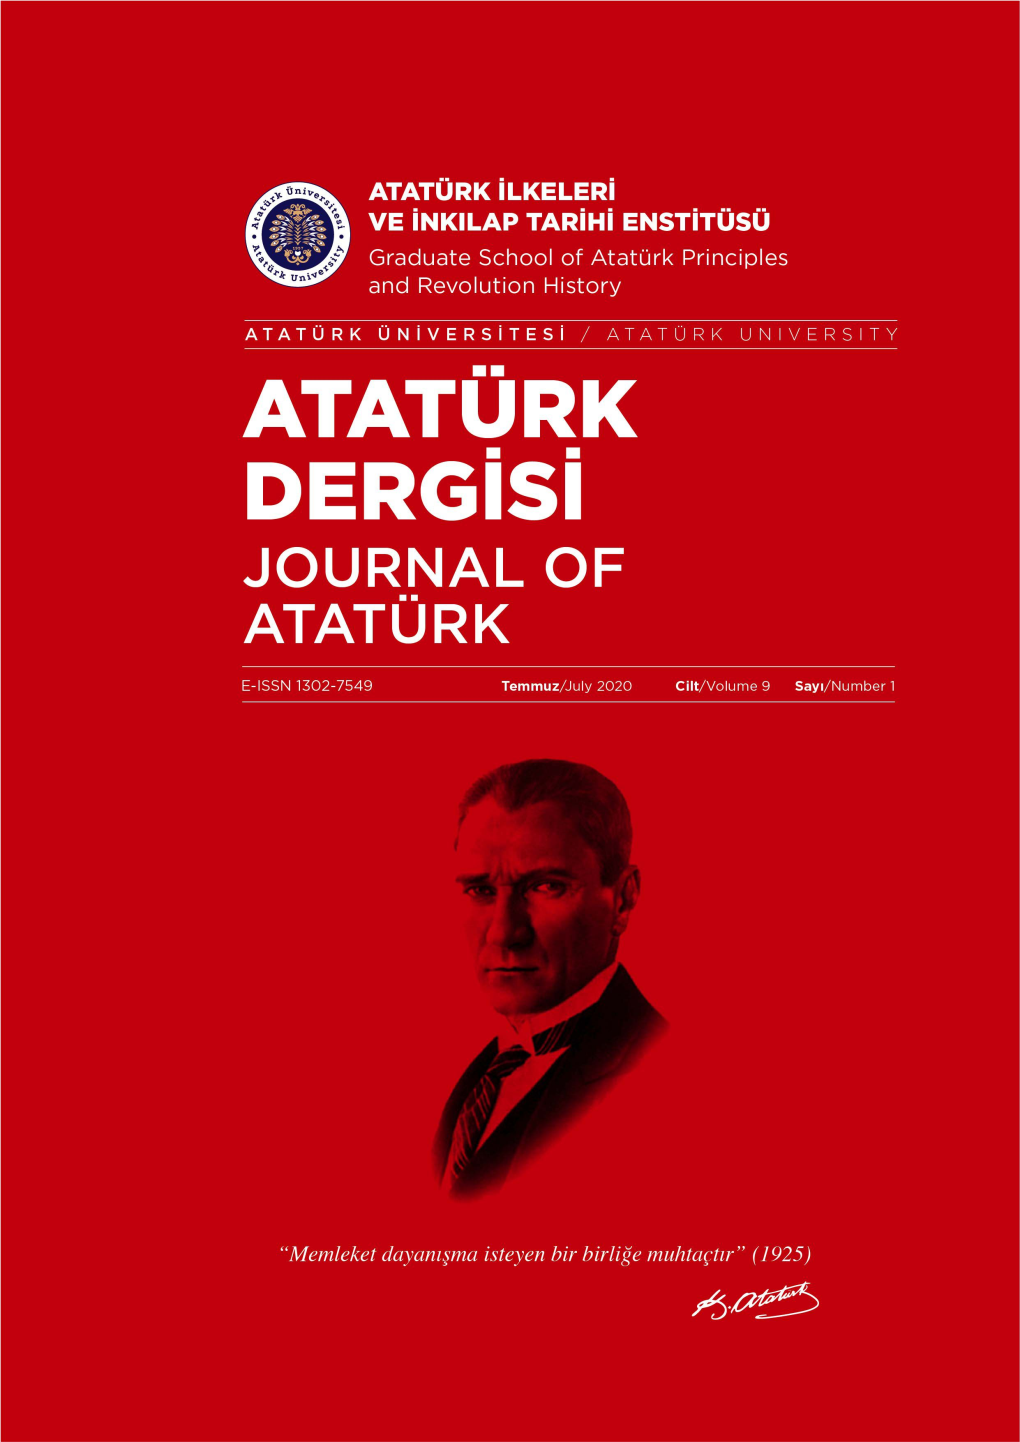 ATATÜRK DERGİSİ (Journal of Atatürk)